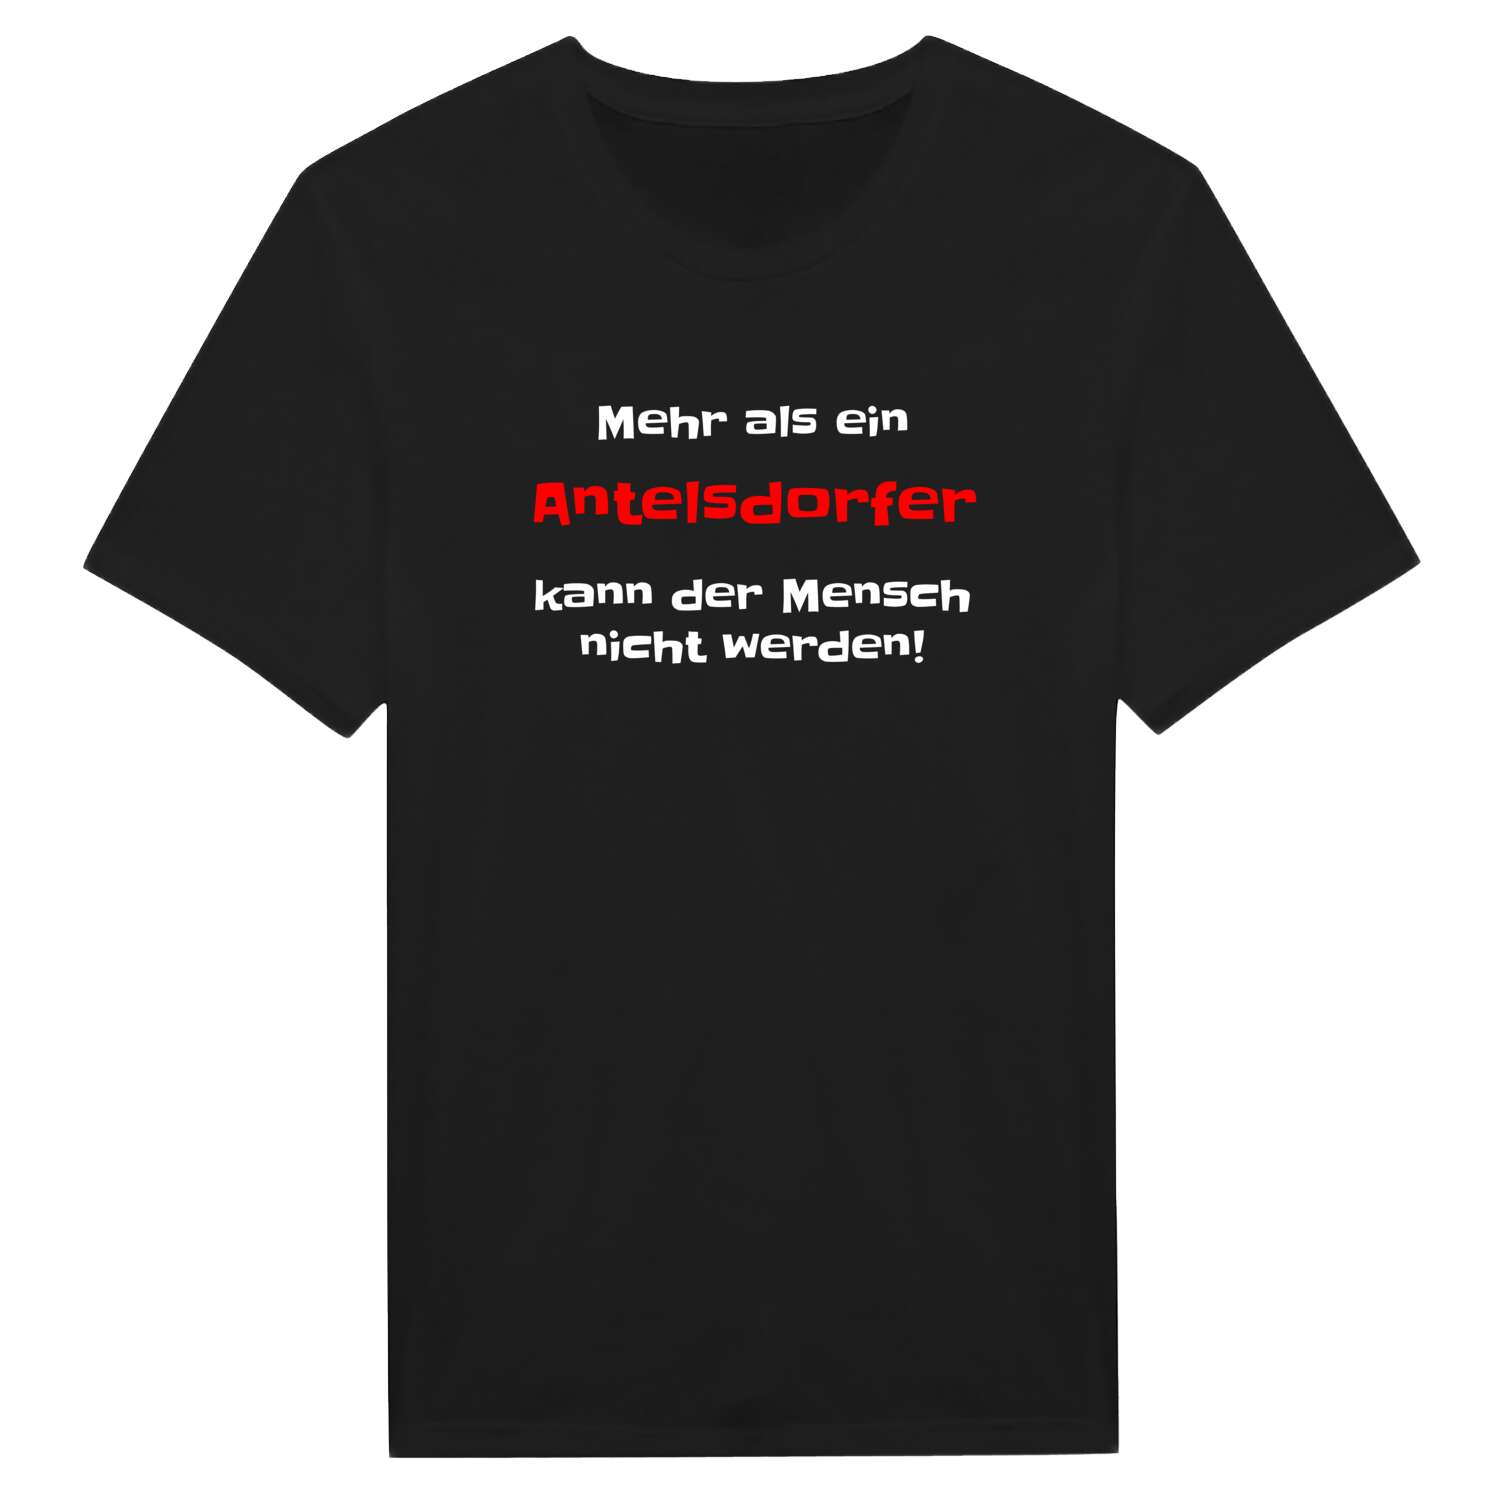 Antelsdorf T-Shirt »Mehr als ein«